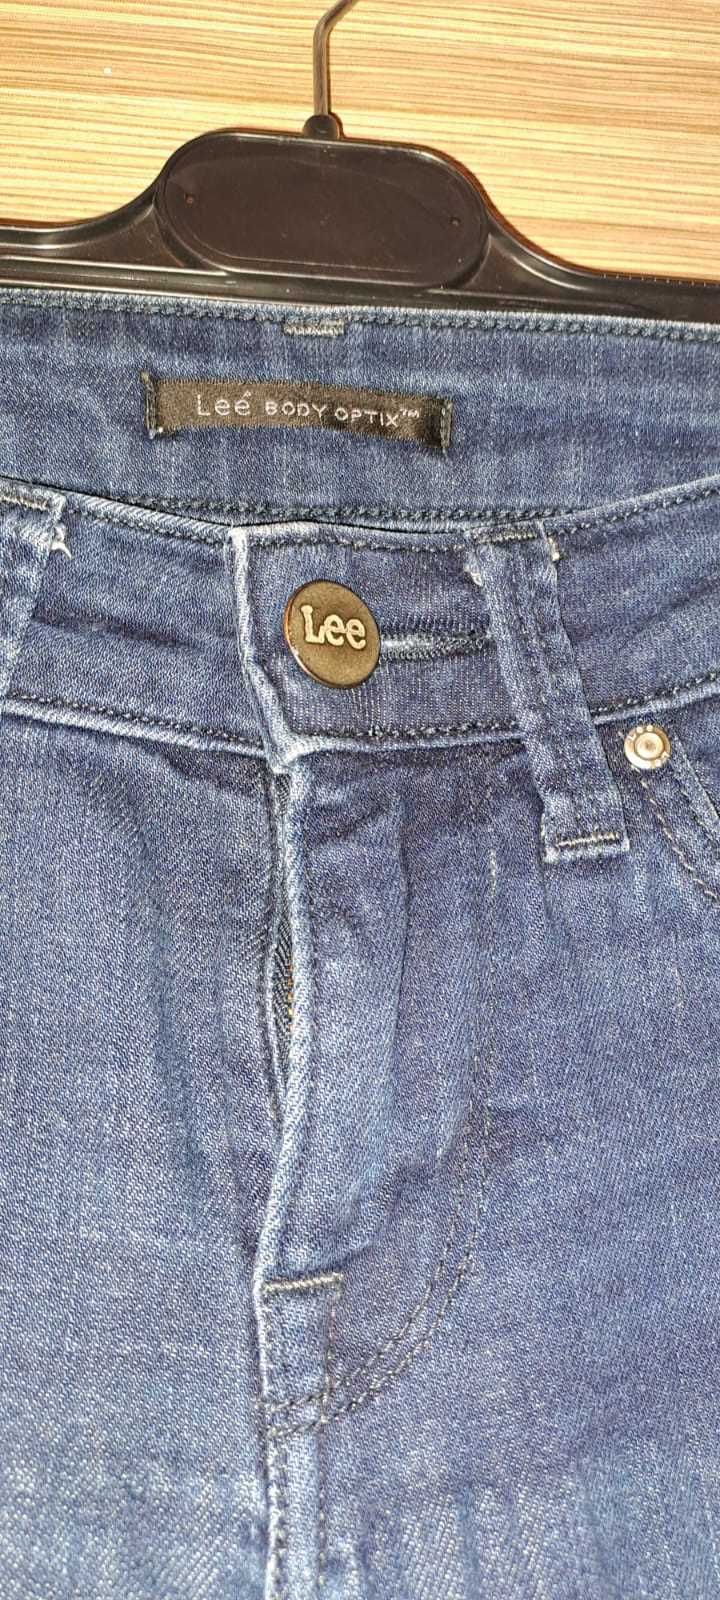 Spodnie damskie marki Lee Body Optix- rozmiar M